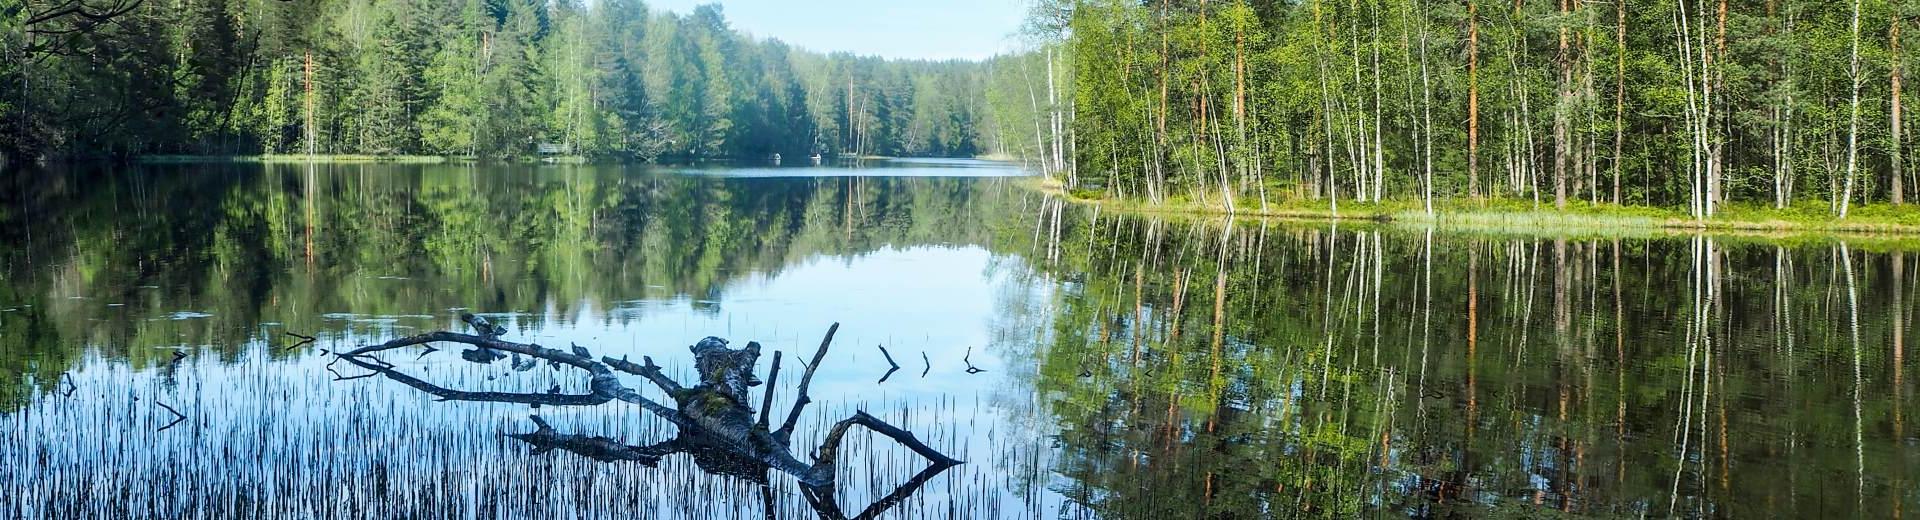 Bellissimi paesaggi e monumenti storici: il giusto mix con le case vacanze in Svezia centrale - Casamundo